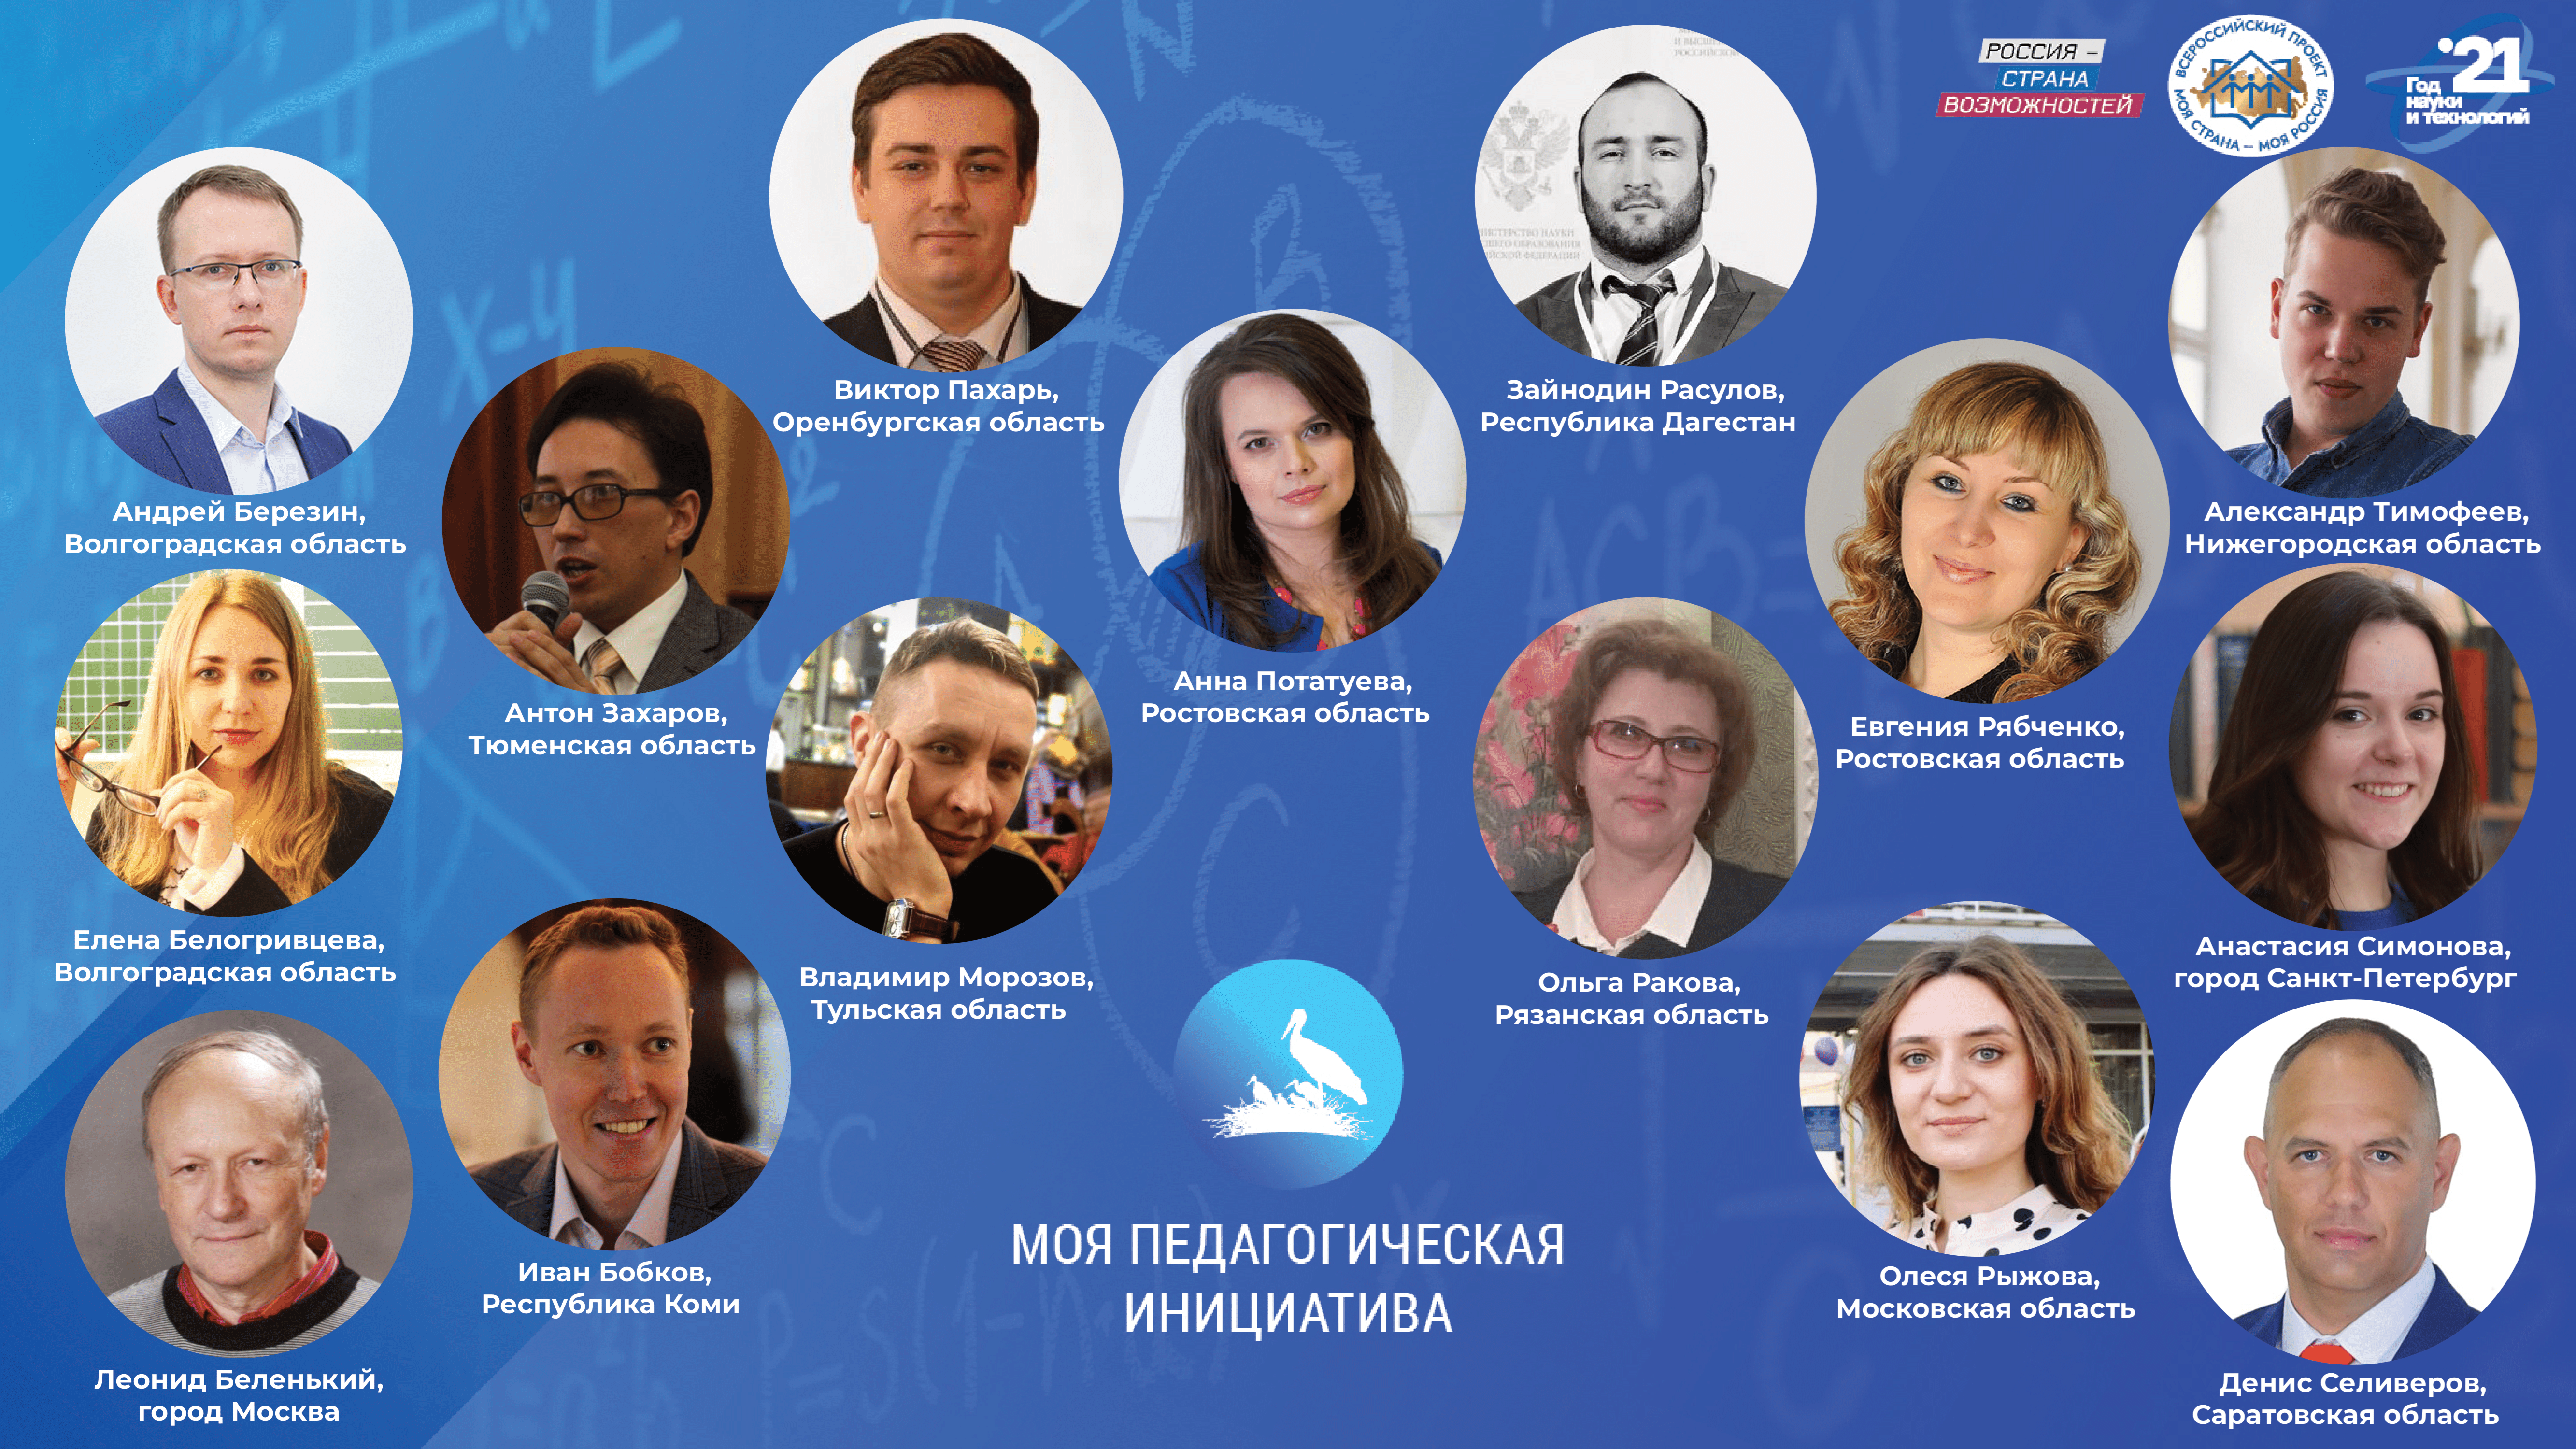 Определены победители конкурса «Моя страна – моя Россия» в самой массовой номинации «Моя педагогическая инициатива»